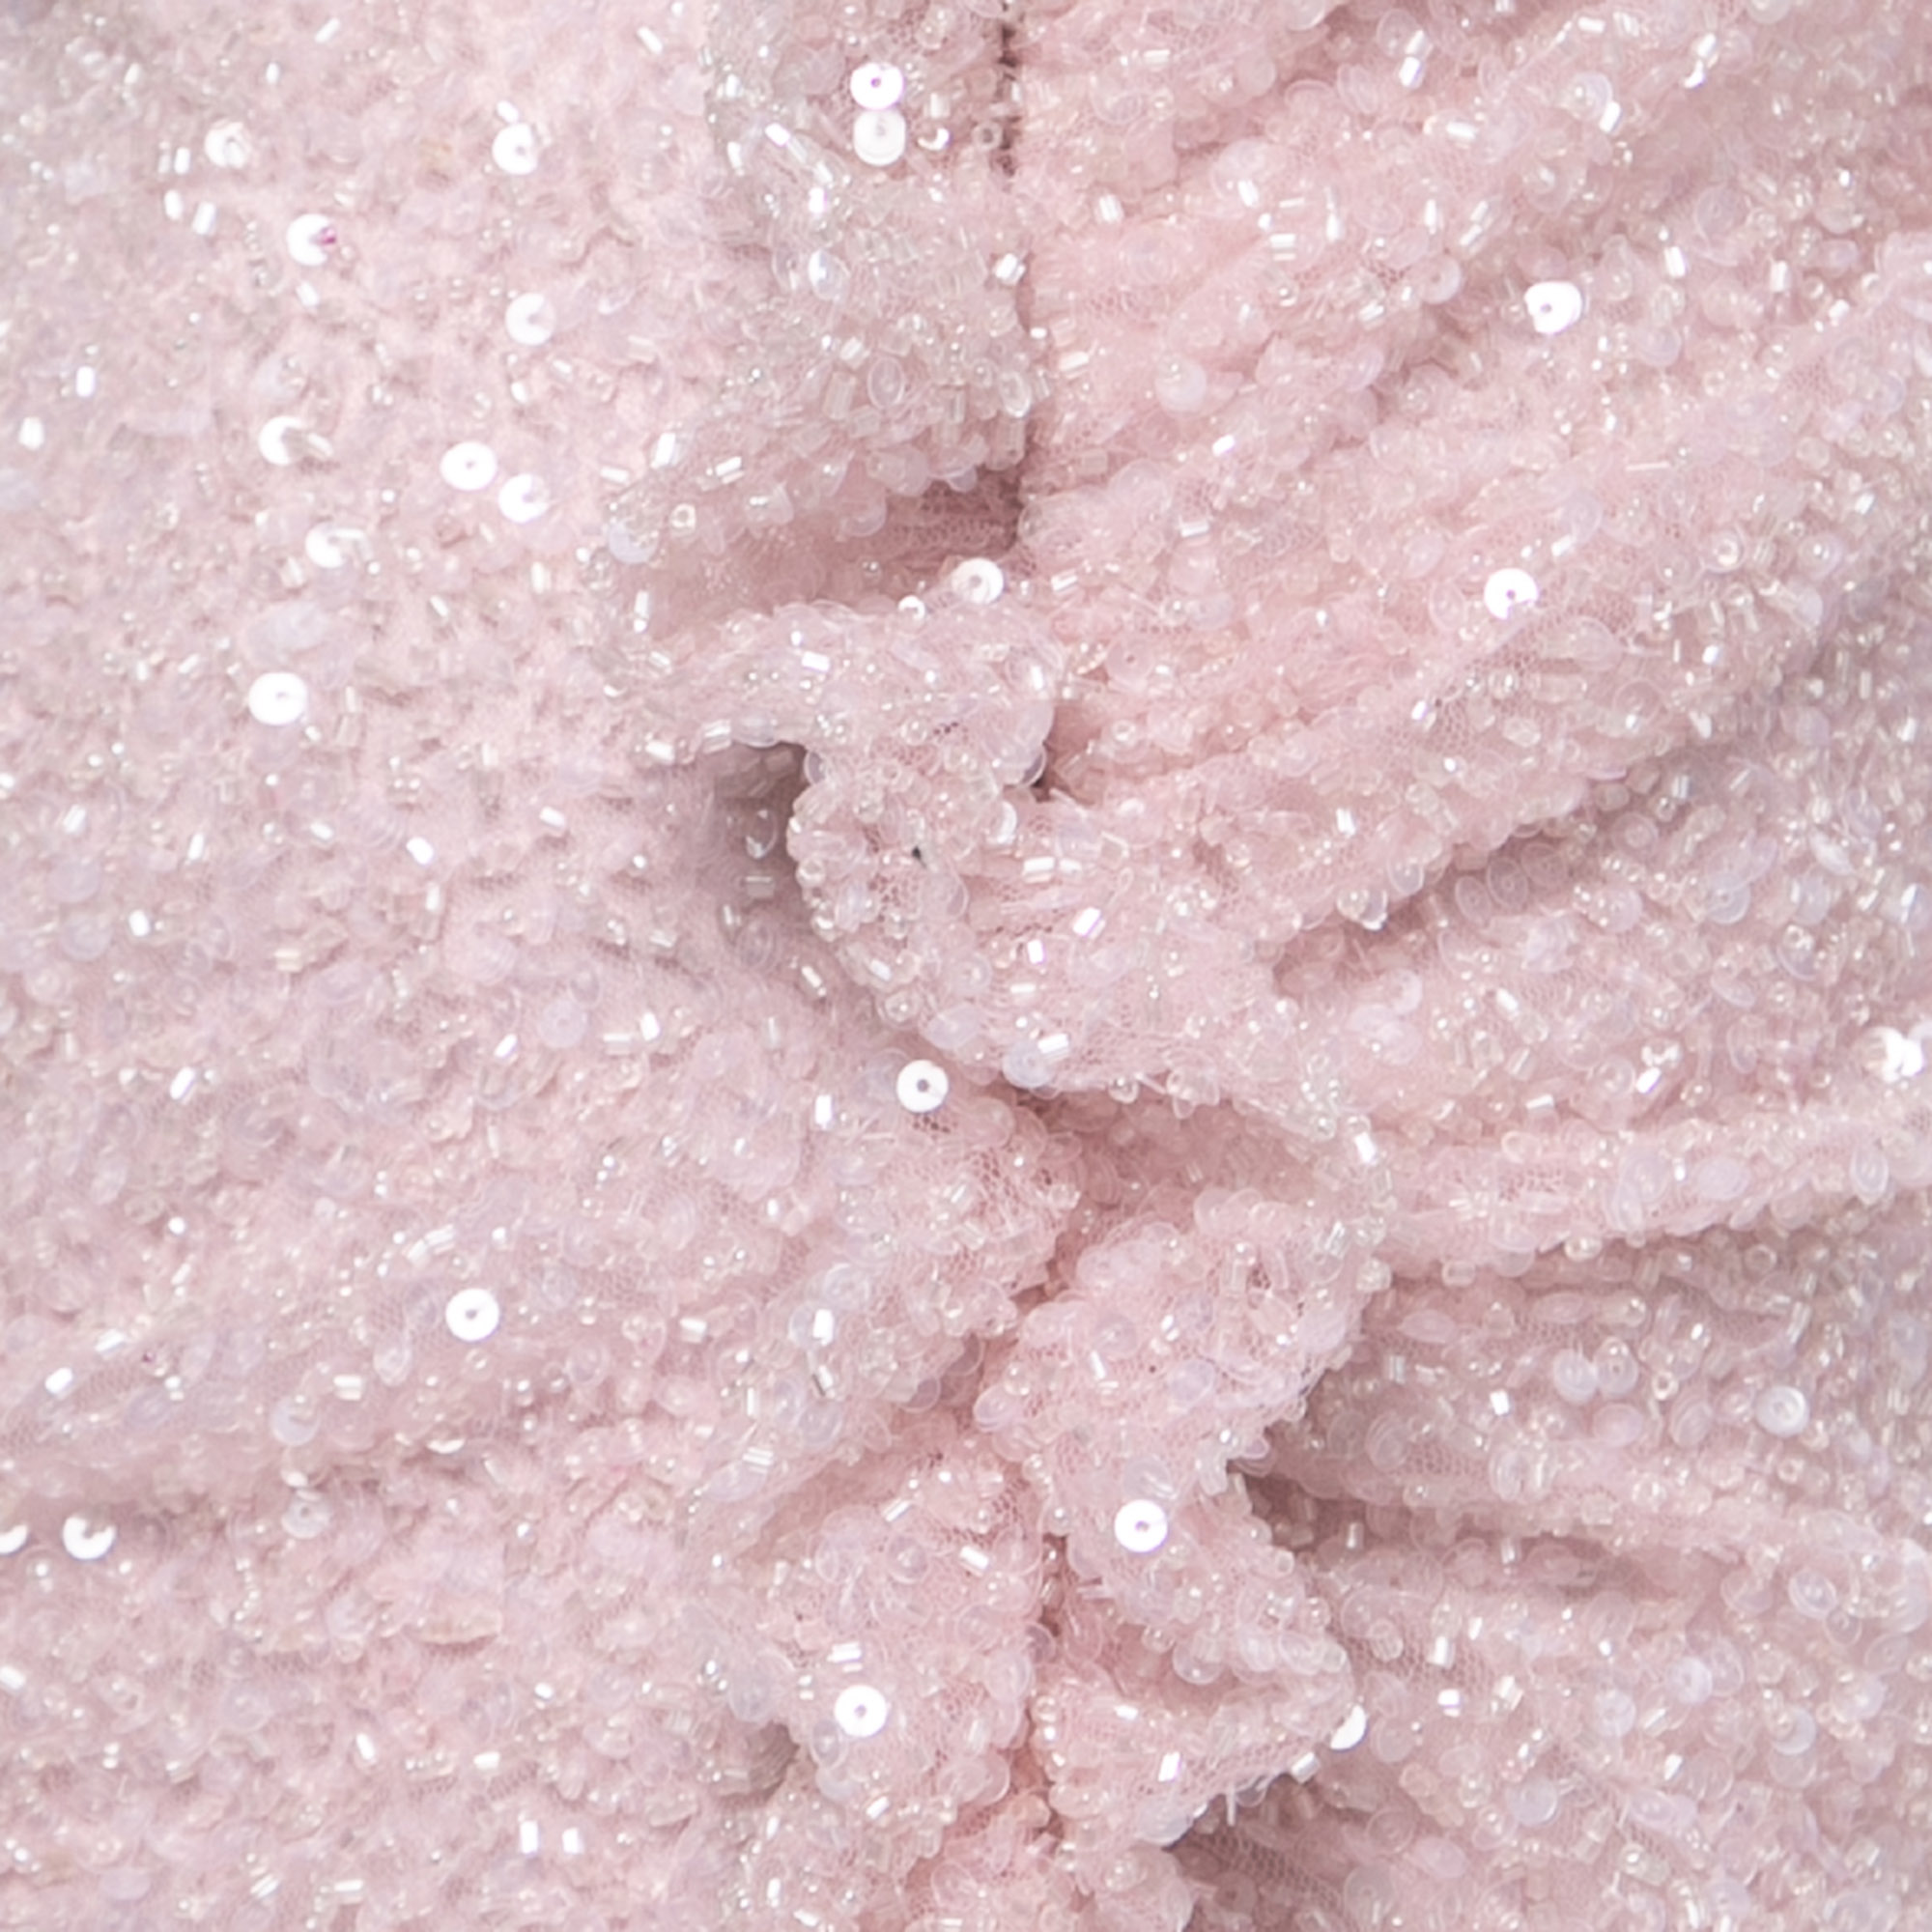 Sofi Milo Light Pink Sequin & Bead Embellished One Shoulder Dress M